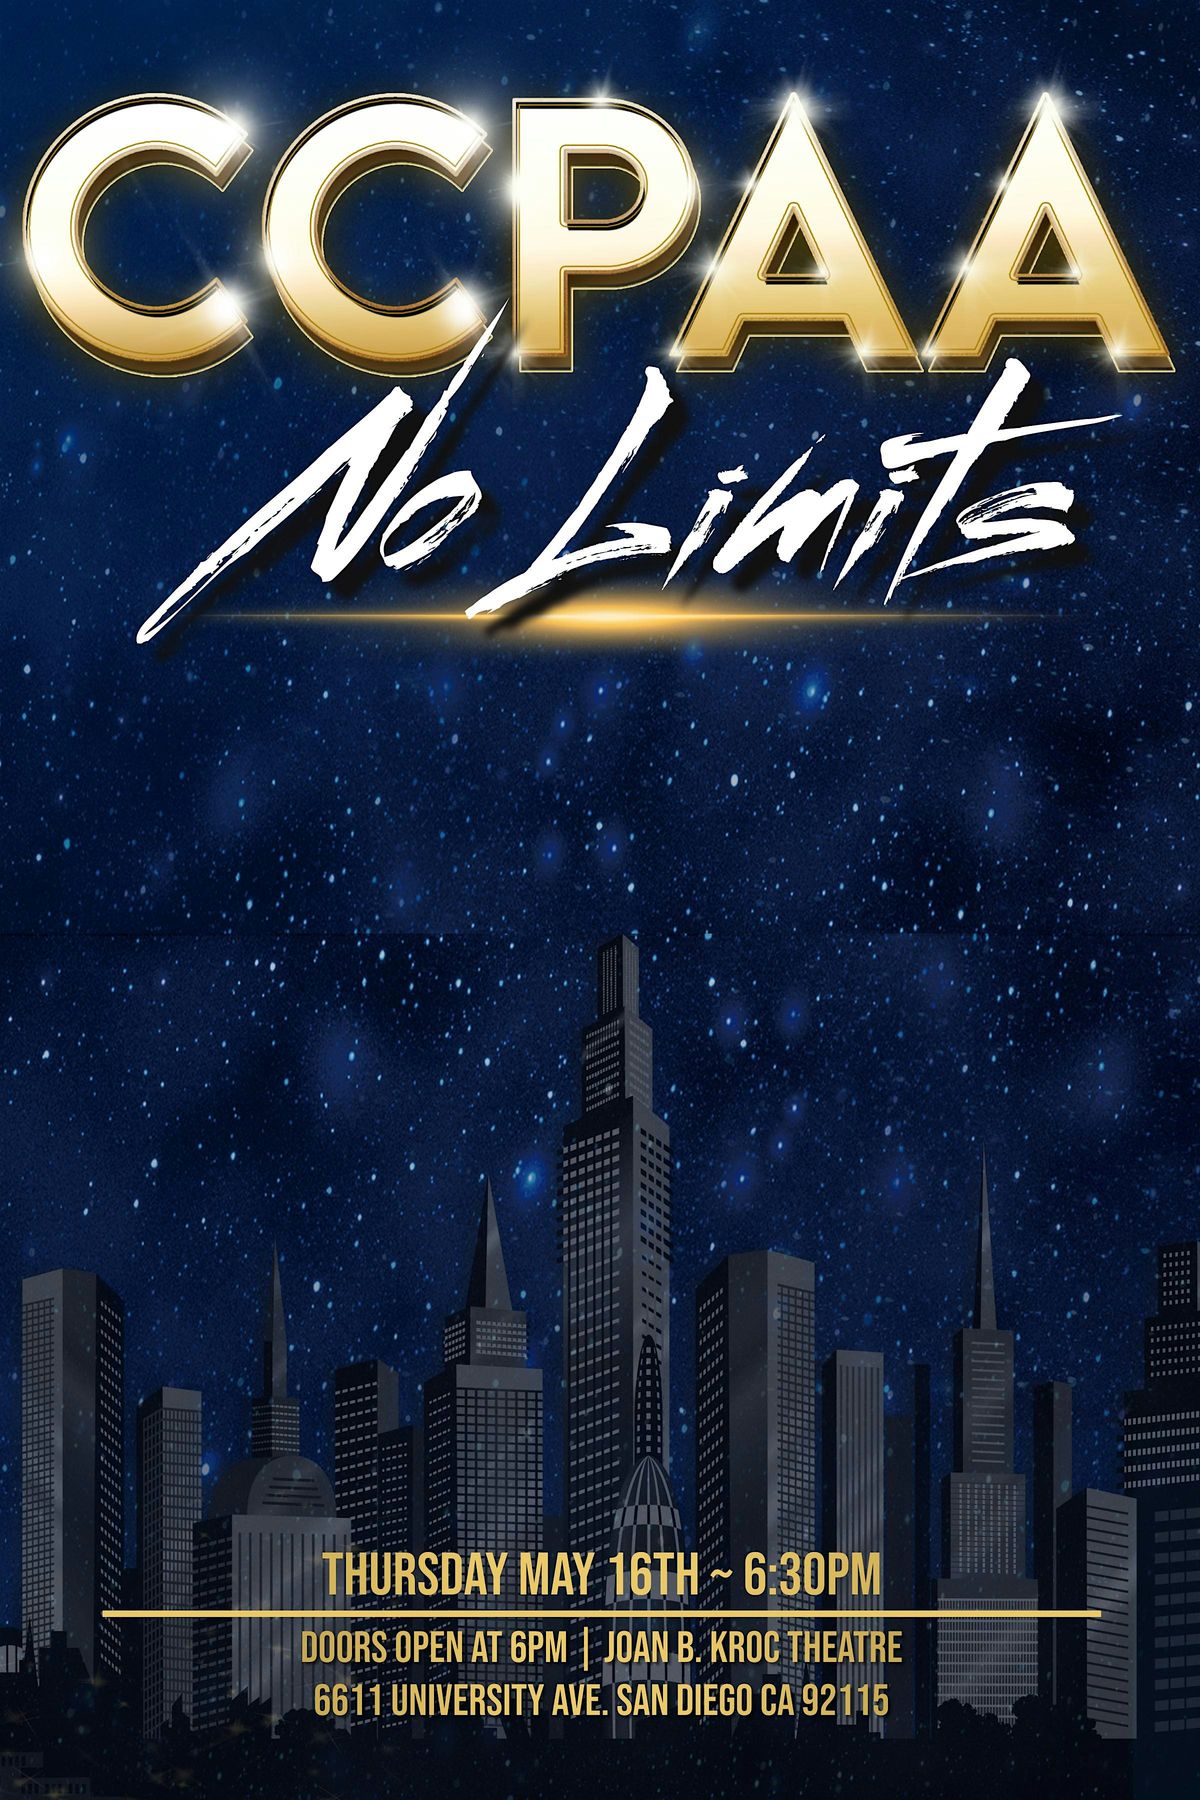 CCPAA: No Limits